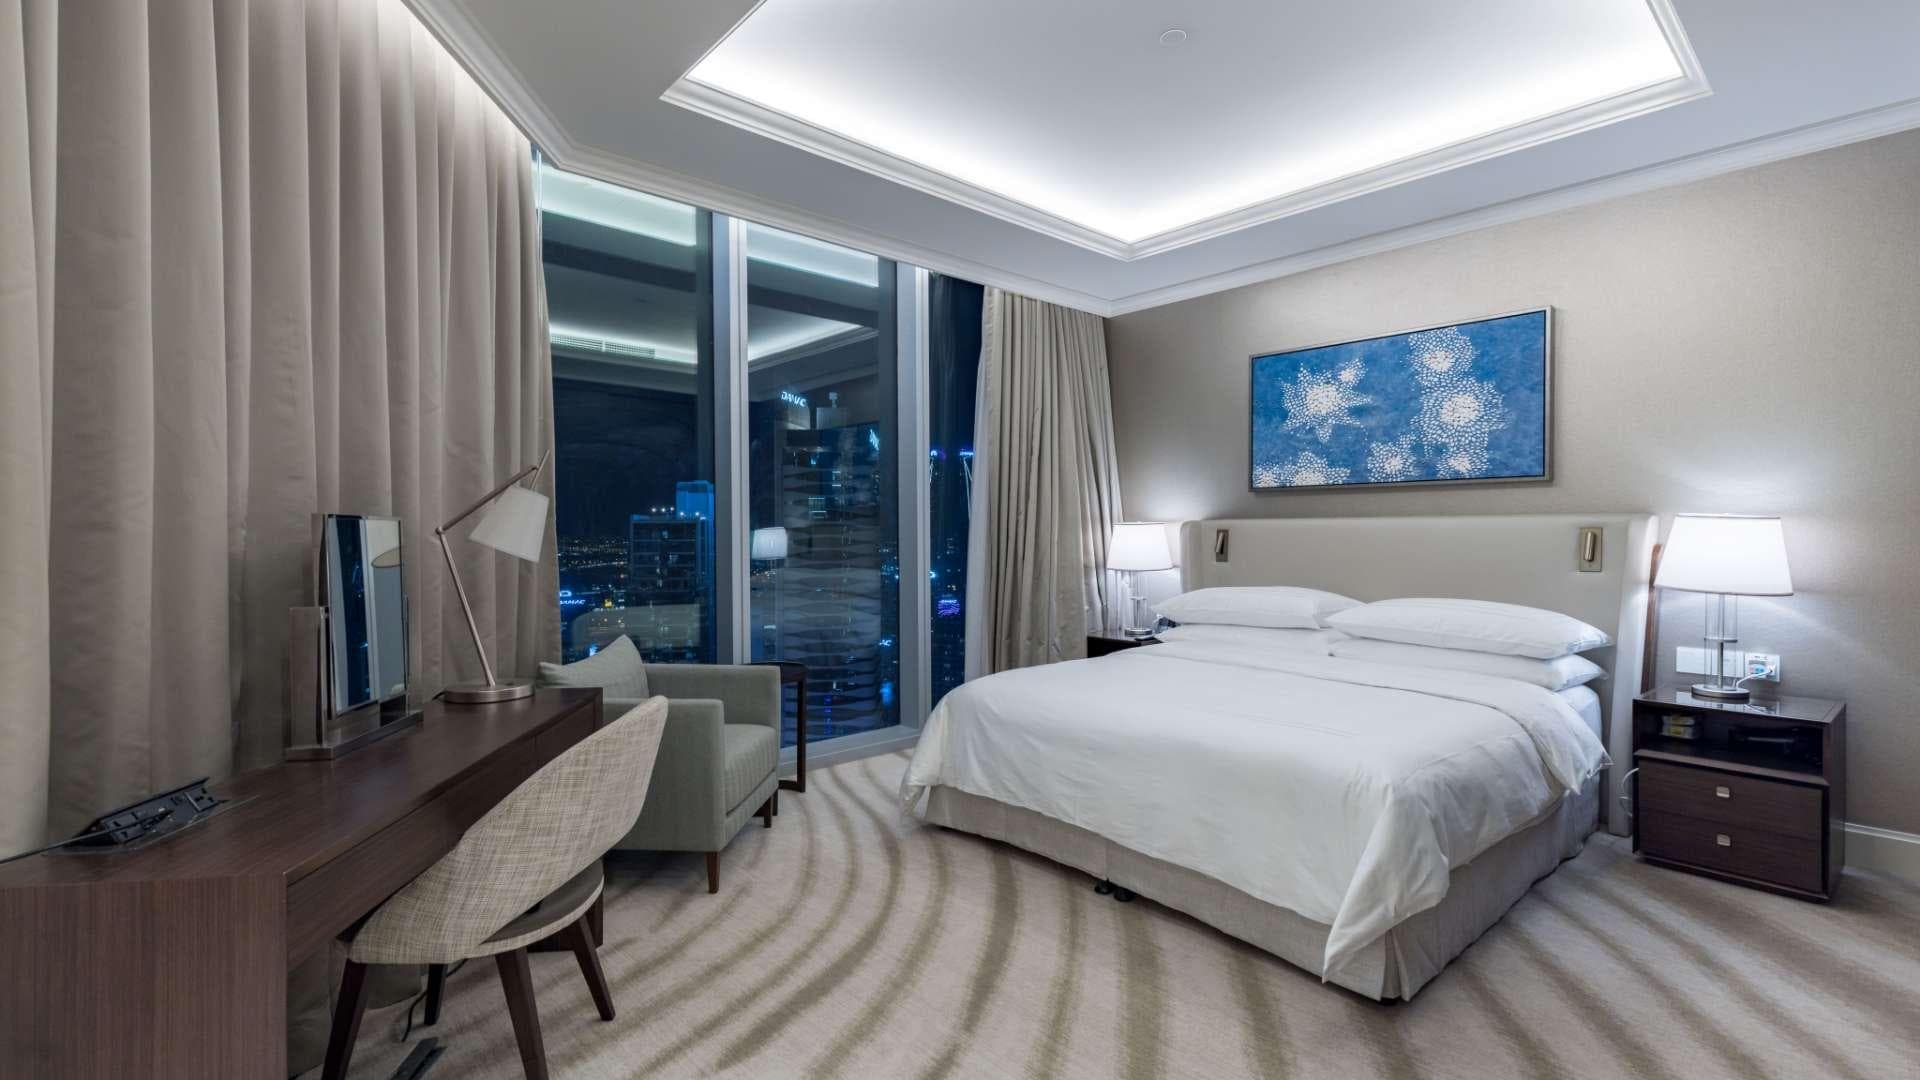 2 Bedroom Apartment For Rent Marina View Tower B Lp37619 D9b8de966b0c780.jpg